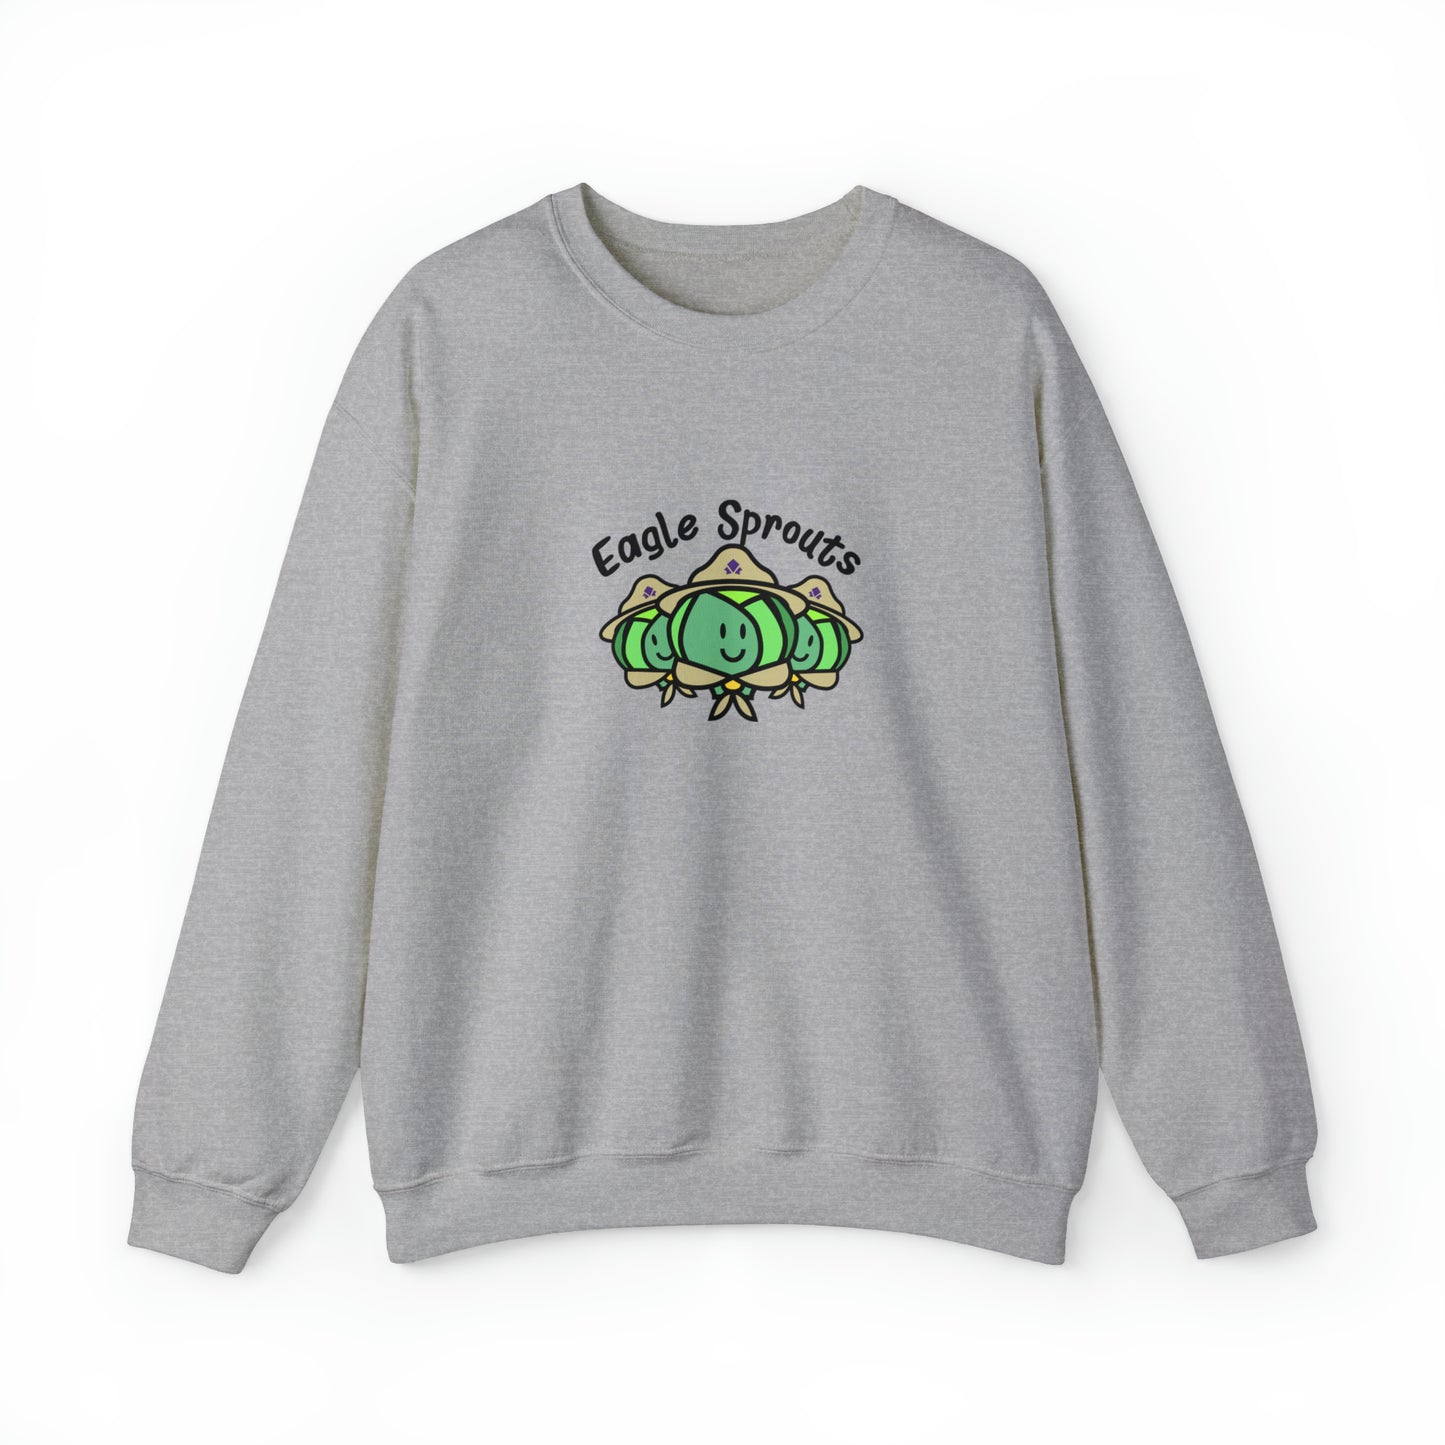 Custom Parody Crewneck Sweatshirt, Eagle Sprouts Design